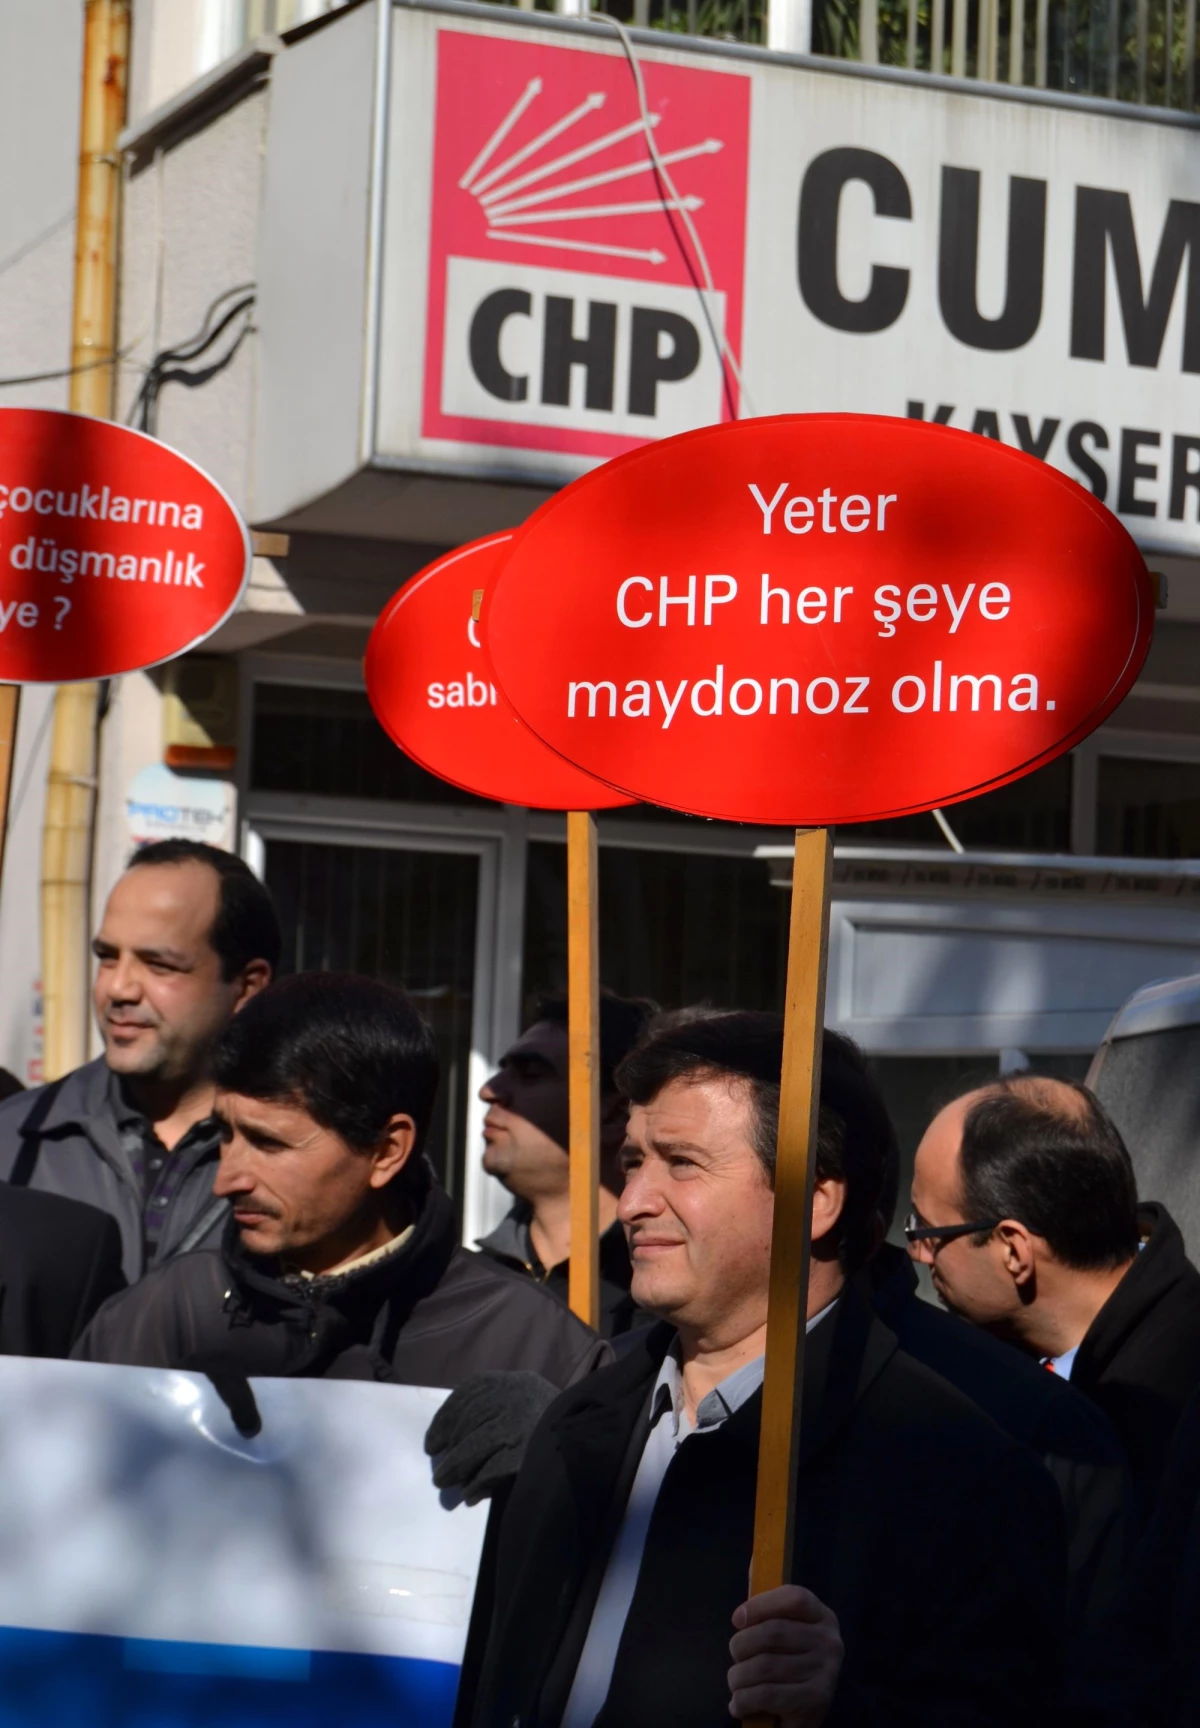 Memurların CHP Önündeki Açıklamasında Gerginlik Yaşandı